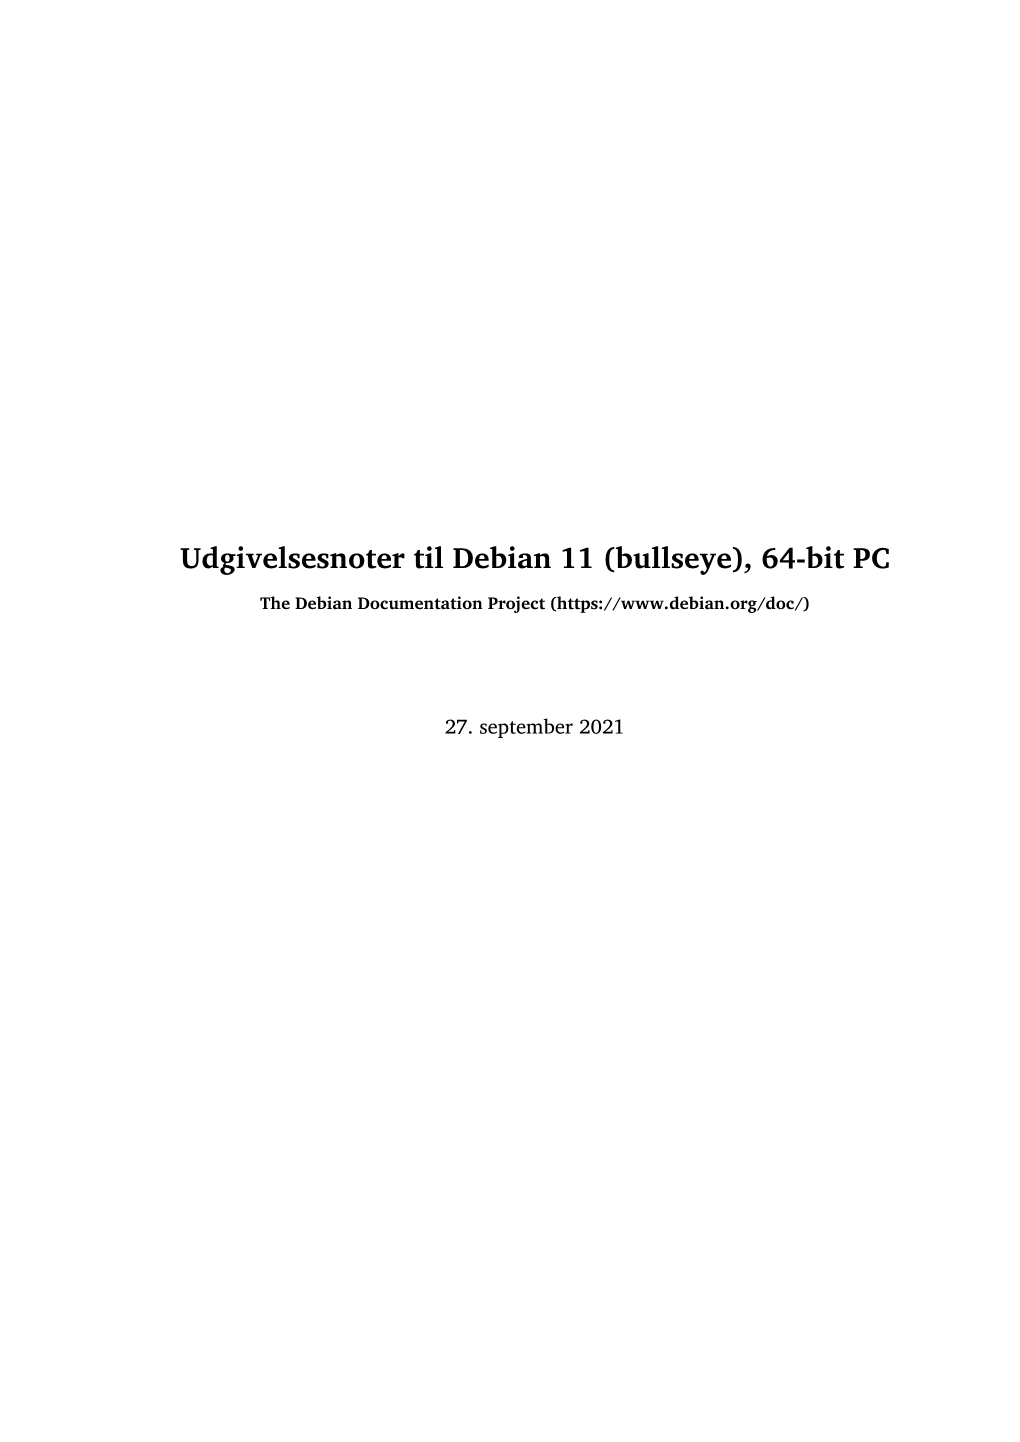 Udgivelsesnoter Til Debian 11 (Bullseye), 64-Bit PC